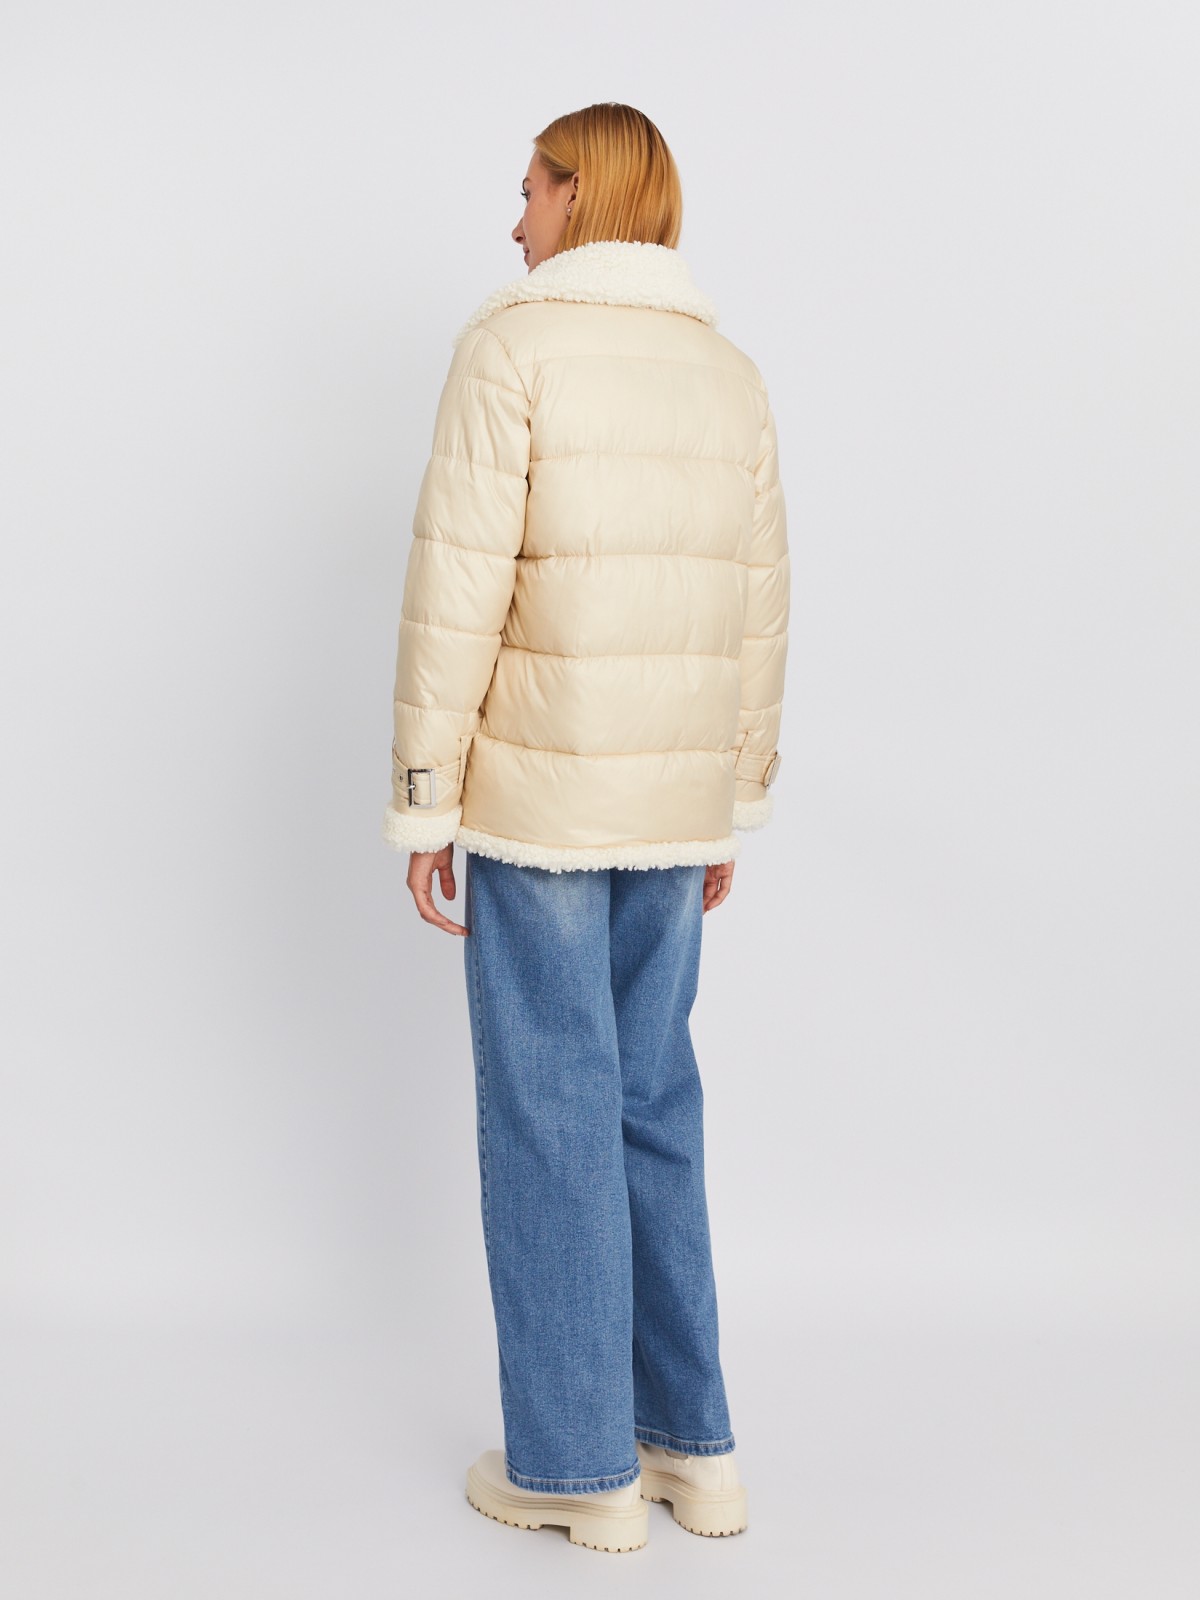 Утеплённая стёганая куртка с отложным воротником и отделкой из искусственного меха zolla 023335112354, цвет молоко, размер M - фото 6